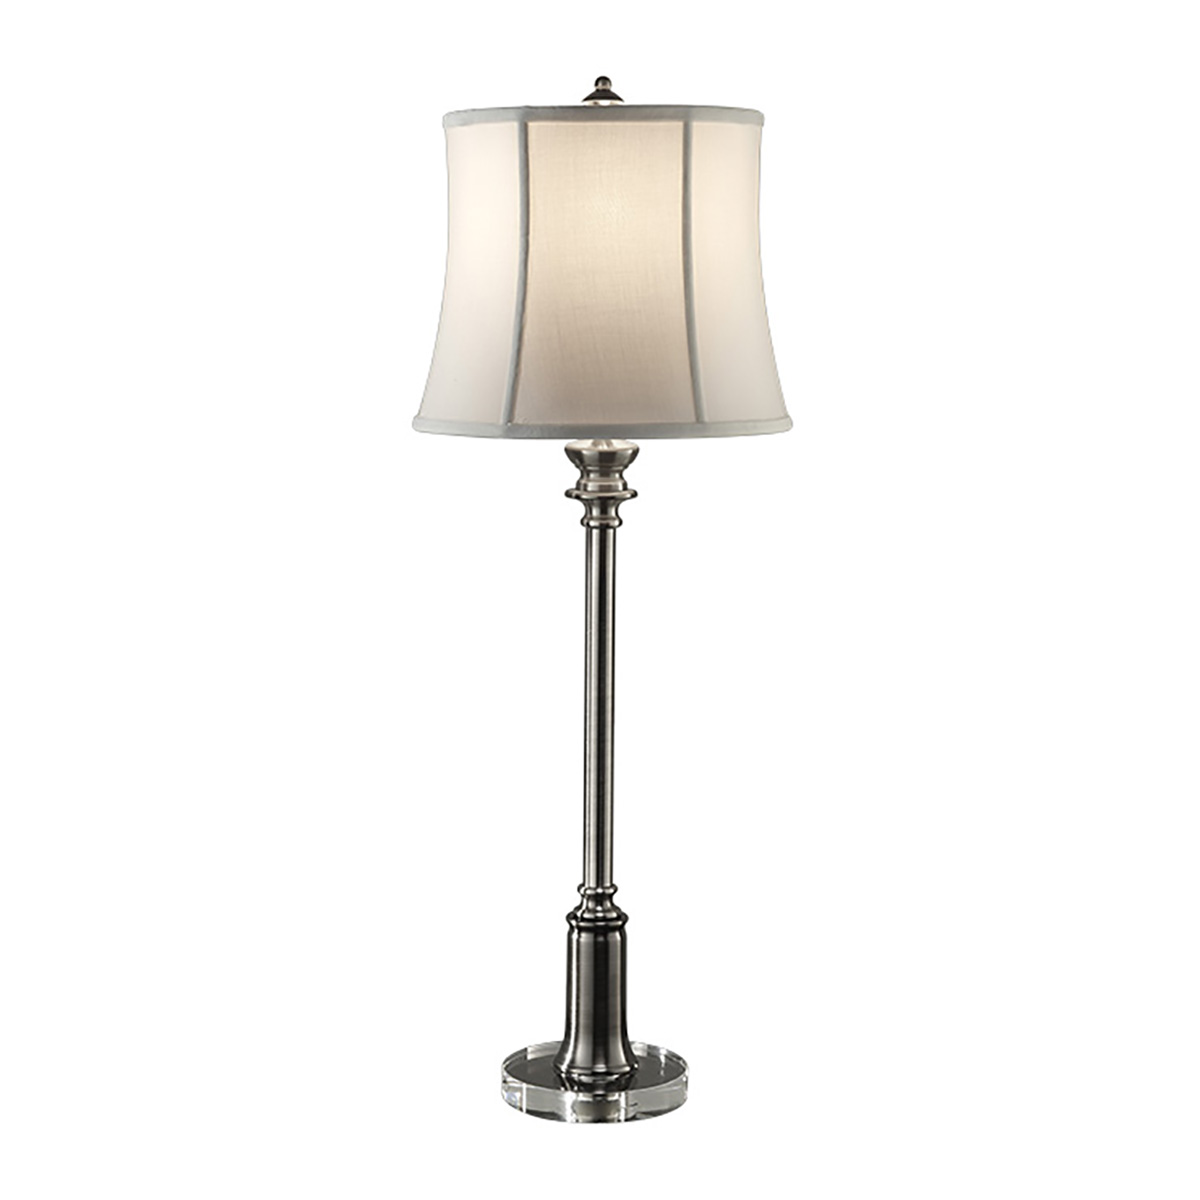 Настольная лампа FE-STATEROOM-BL-AN, Настольные лампы Классический | Хром/Никель Белый/Бежевый | Прихожая, спальня, гостиная, столовая.